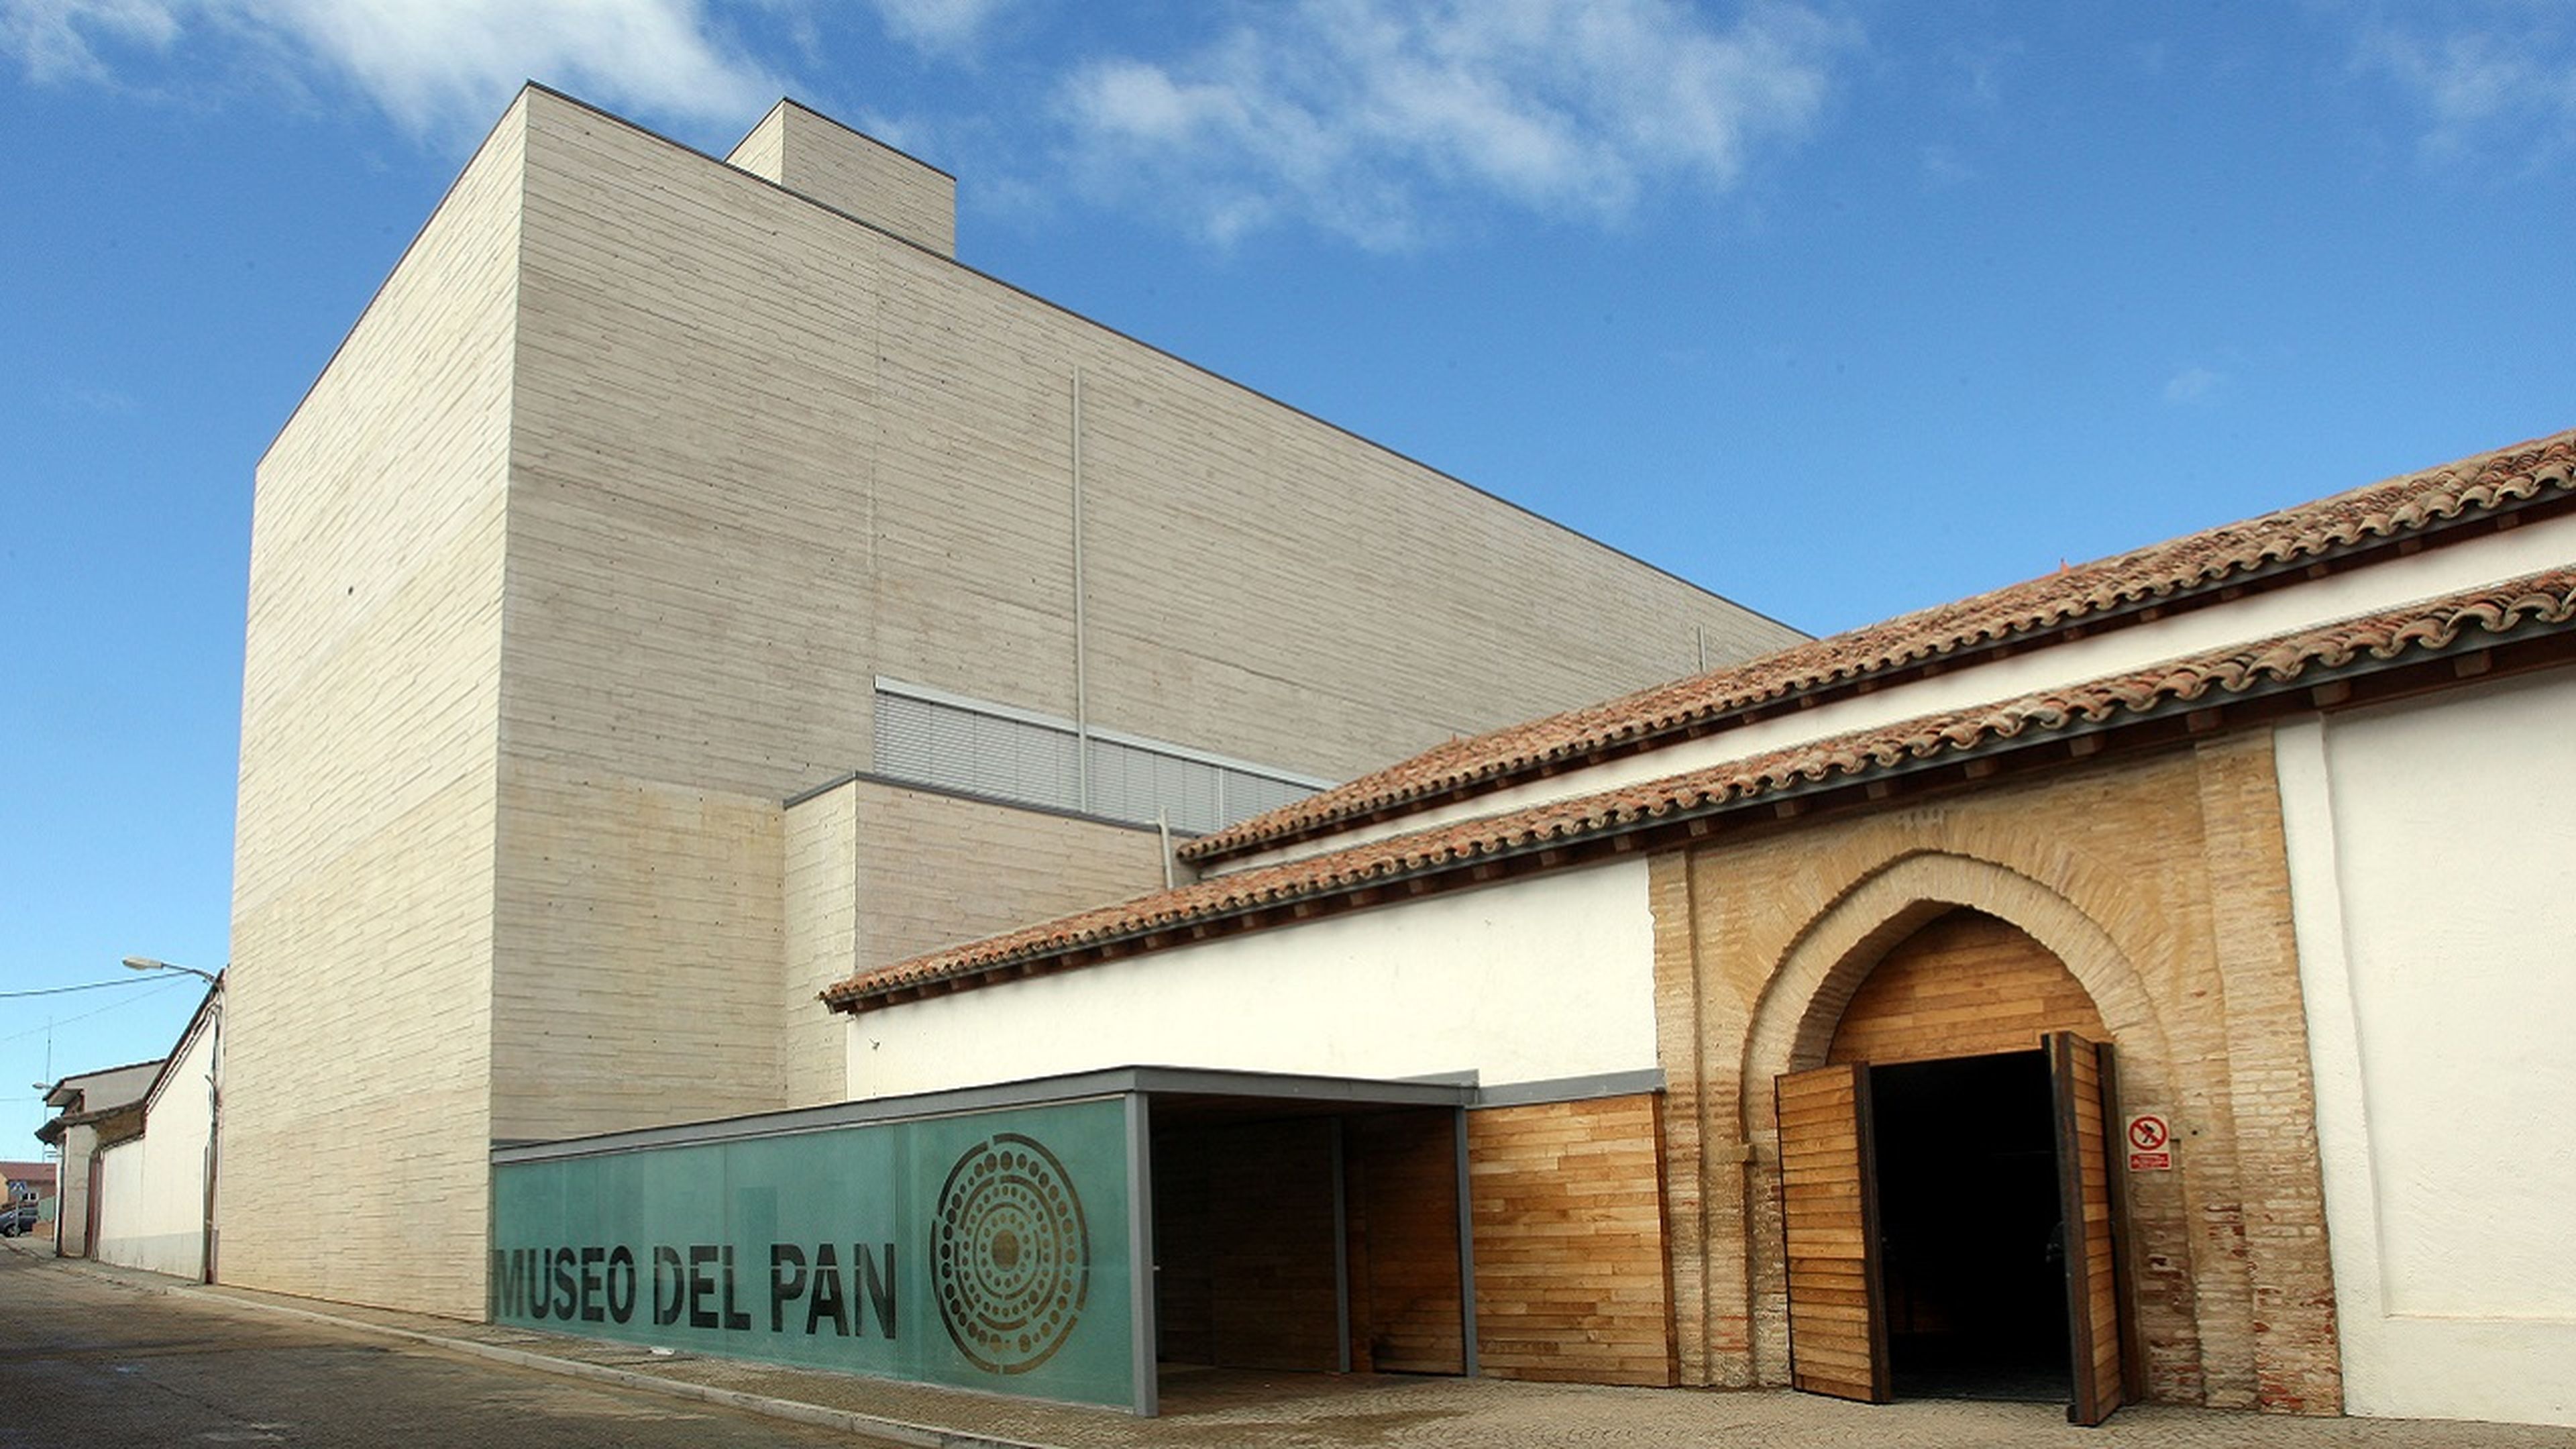 No podrás creer que existan: estos son los museos más extraños de España